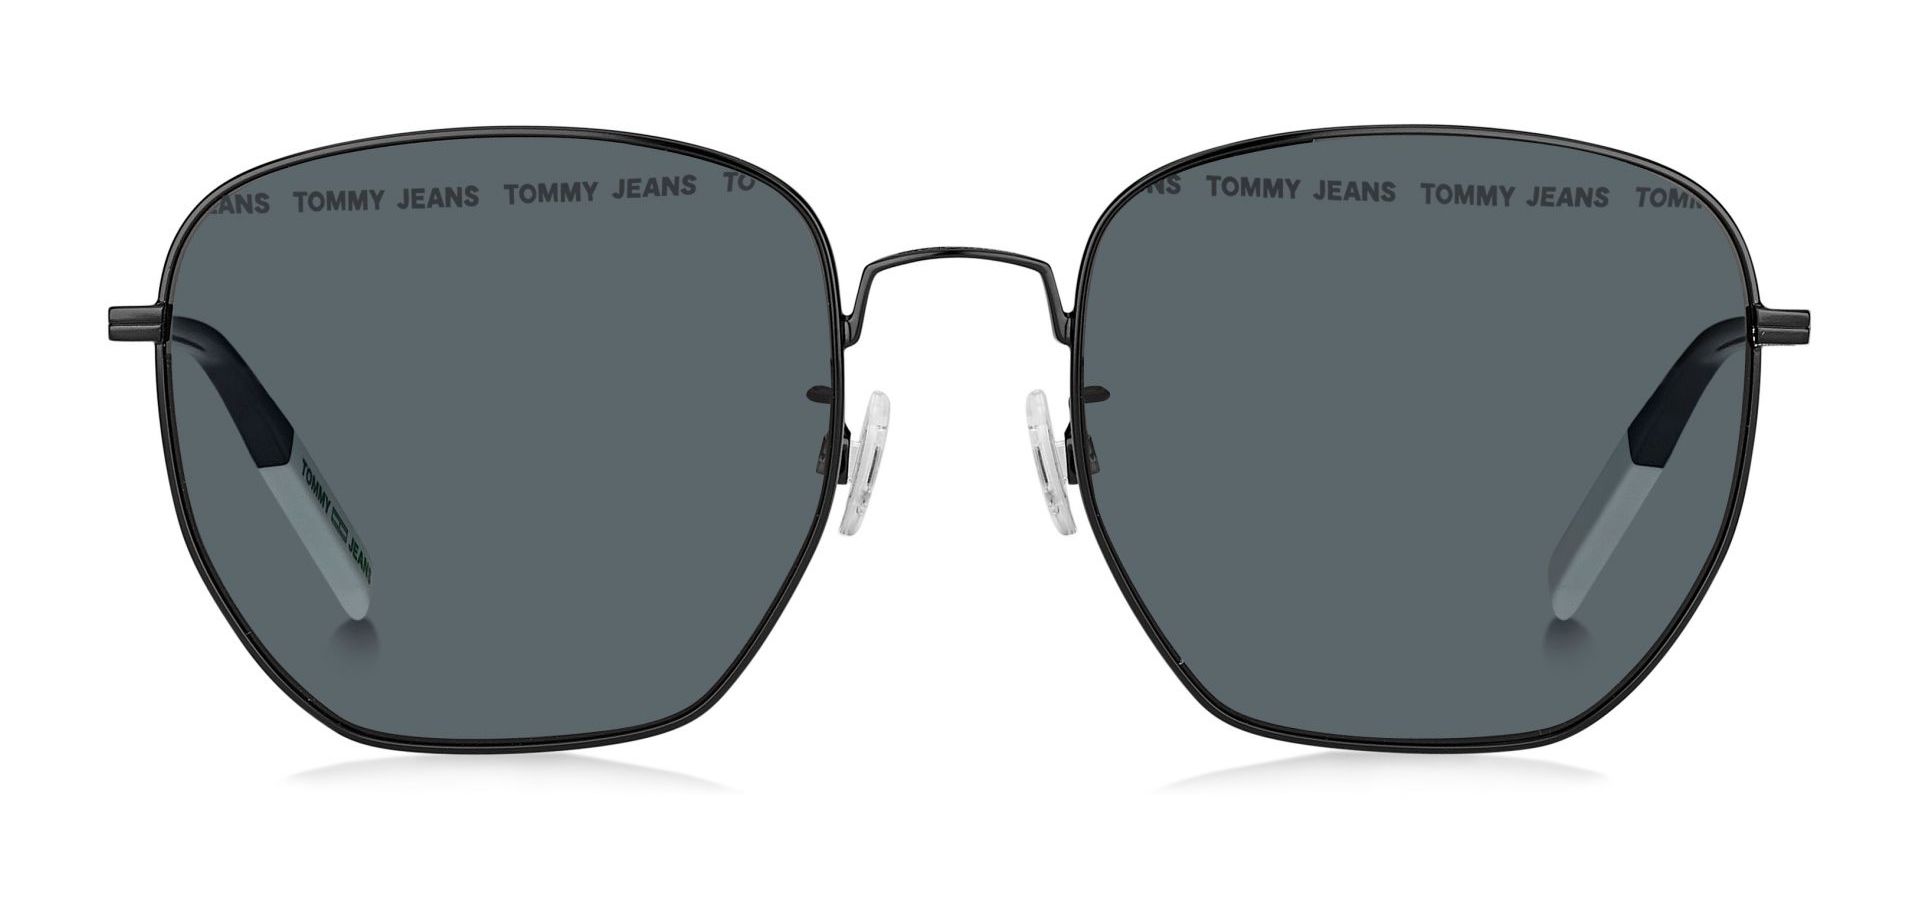 Sunčane naočale Tommy Jeans TOMMY HILFIGER 0034: Boja: Black, Veličina: 54-14-145, Spol: unisex, Materijal: metal